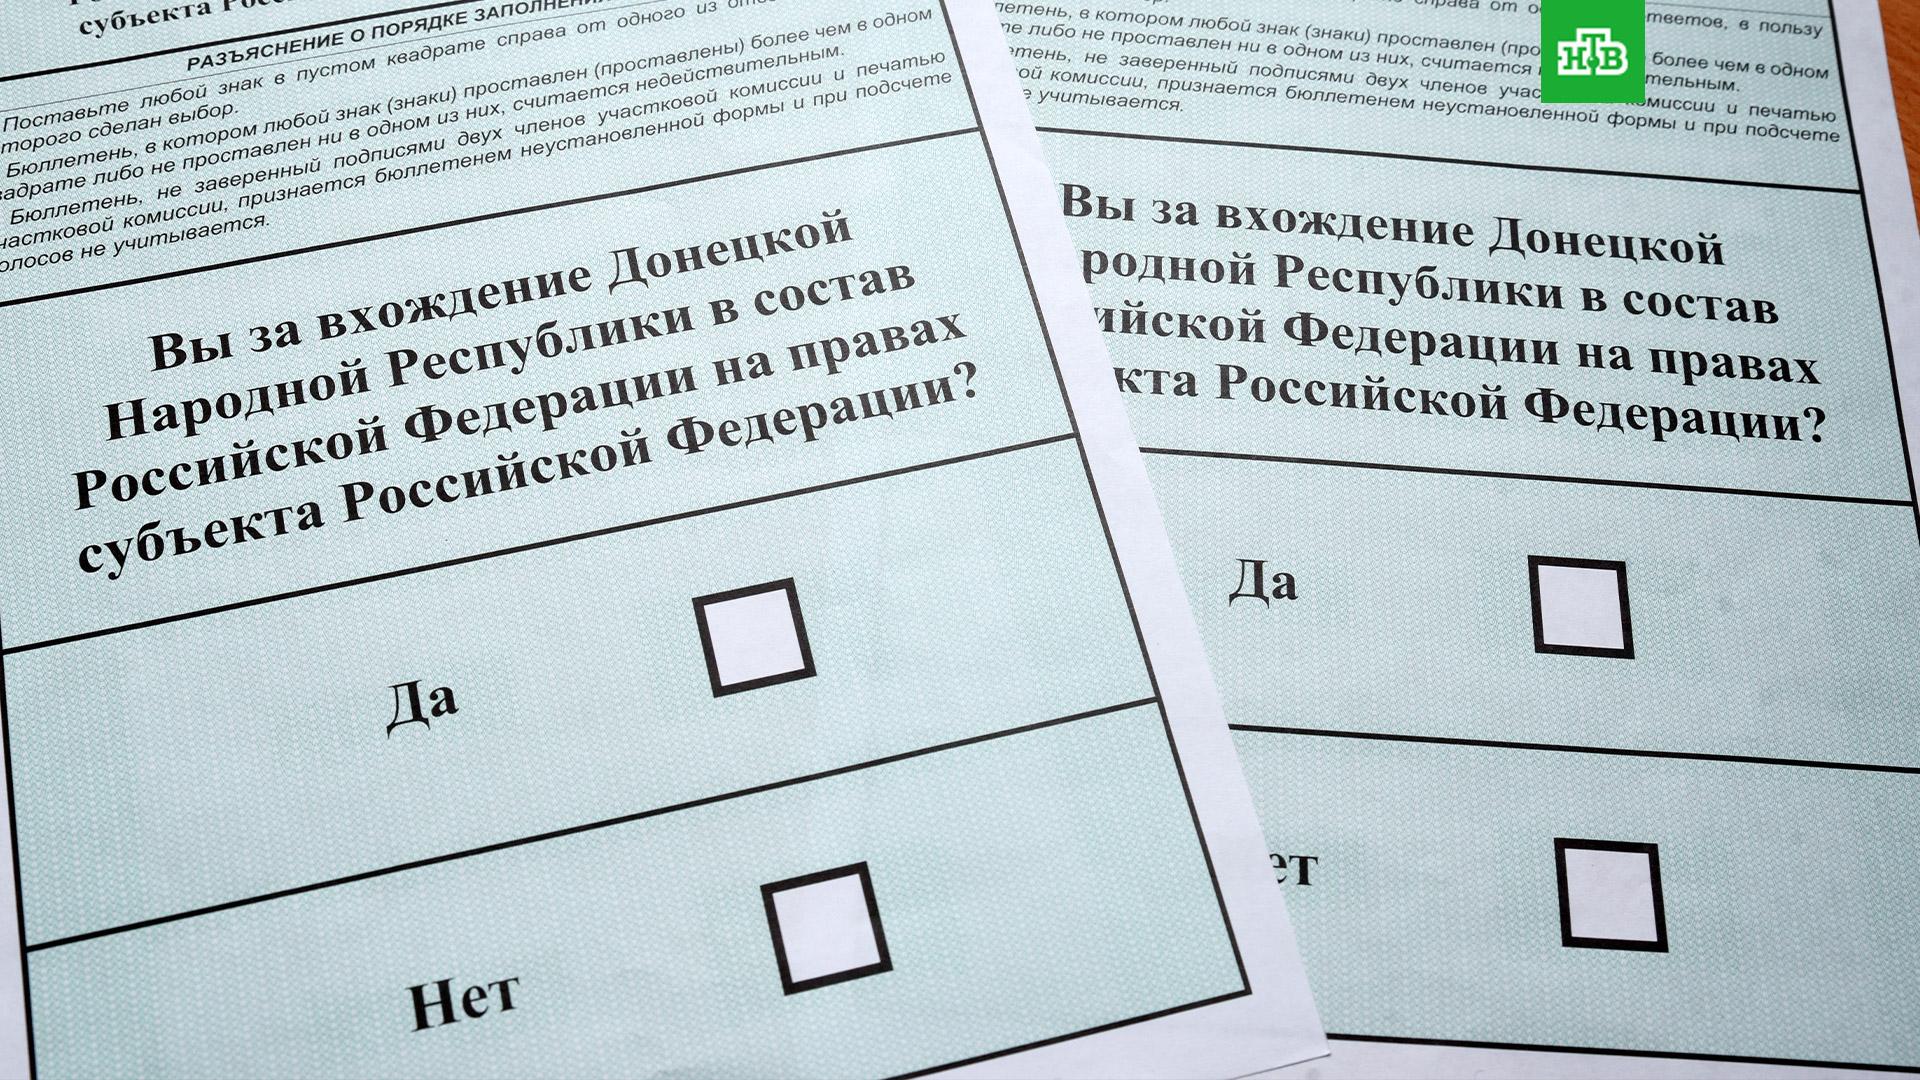 Какие области референдума. Бюллетень для голосования на референдуме. Бланки для голосования. Бланки референдума. Бюллетень референдума на Украине.